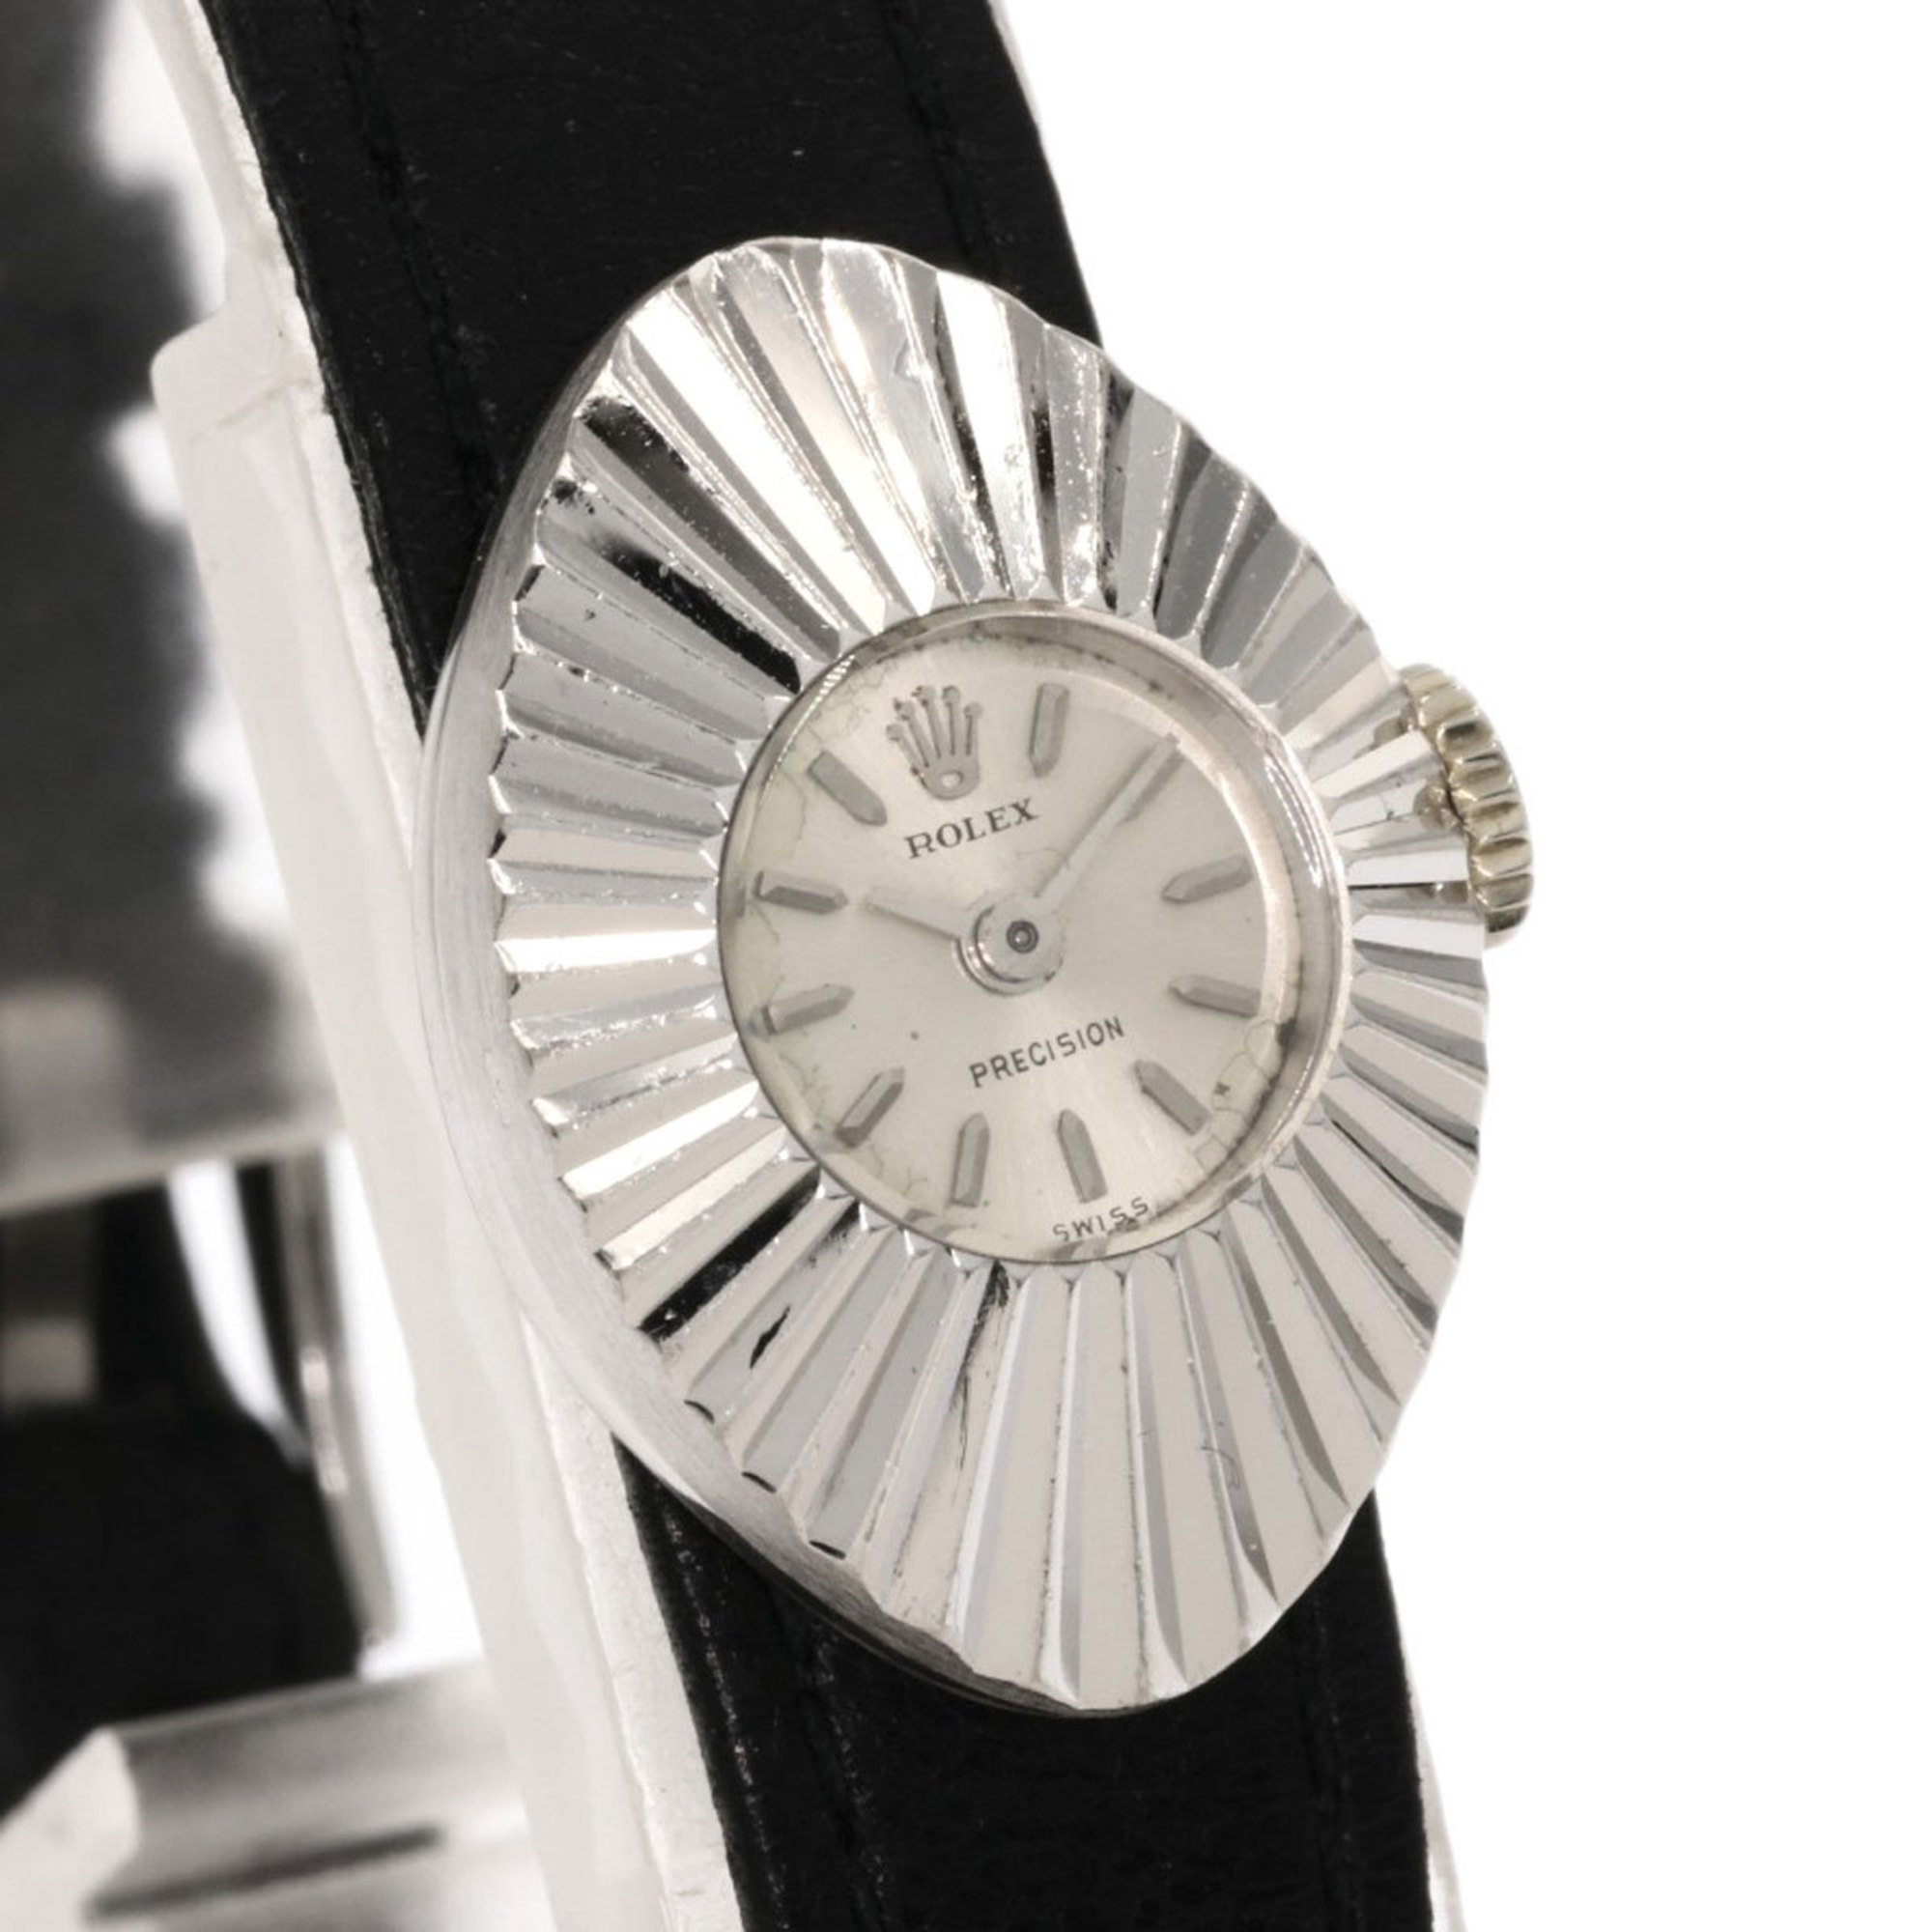 Rolex 2000 chameleon almond 1967 watch K18 white gold leather ladies ROLEX